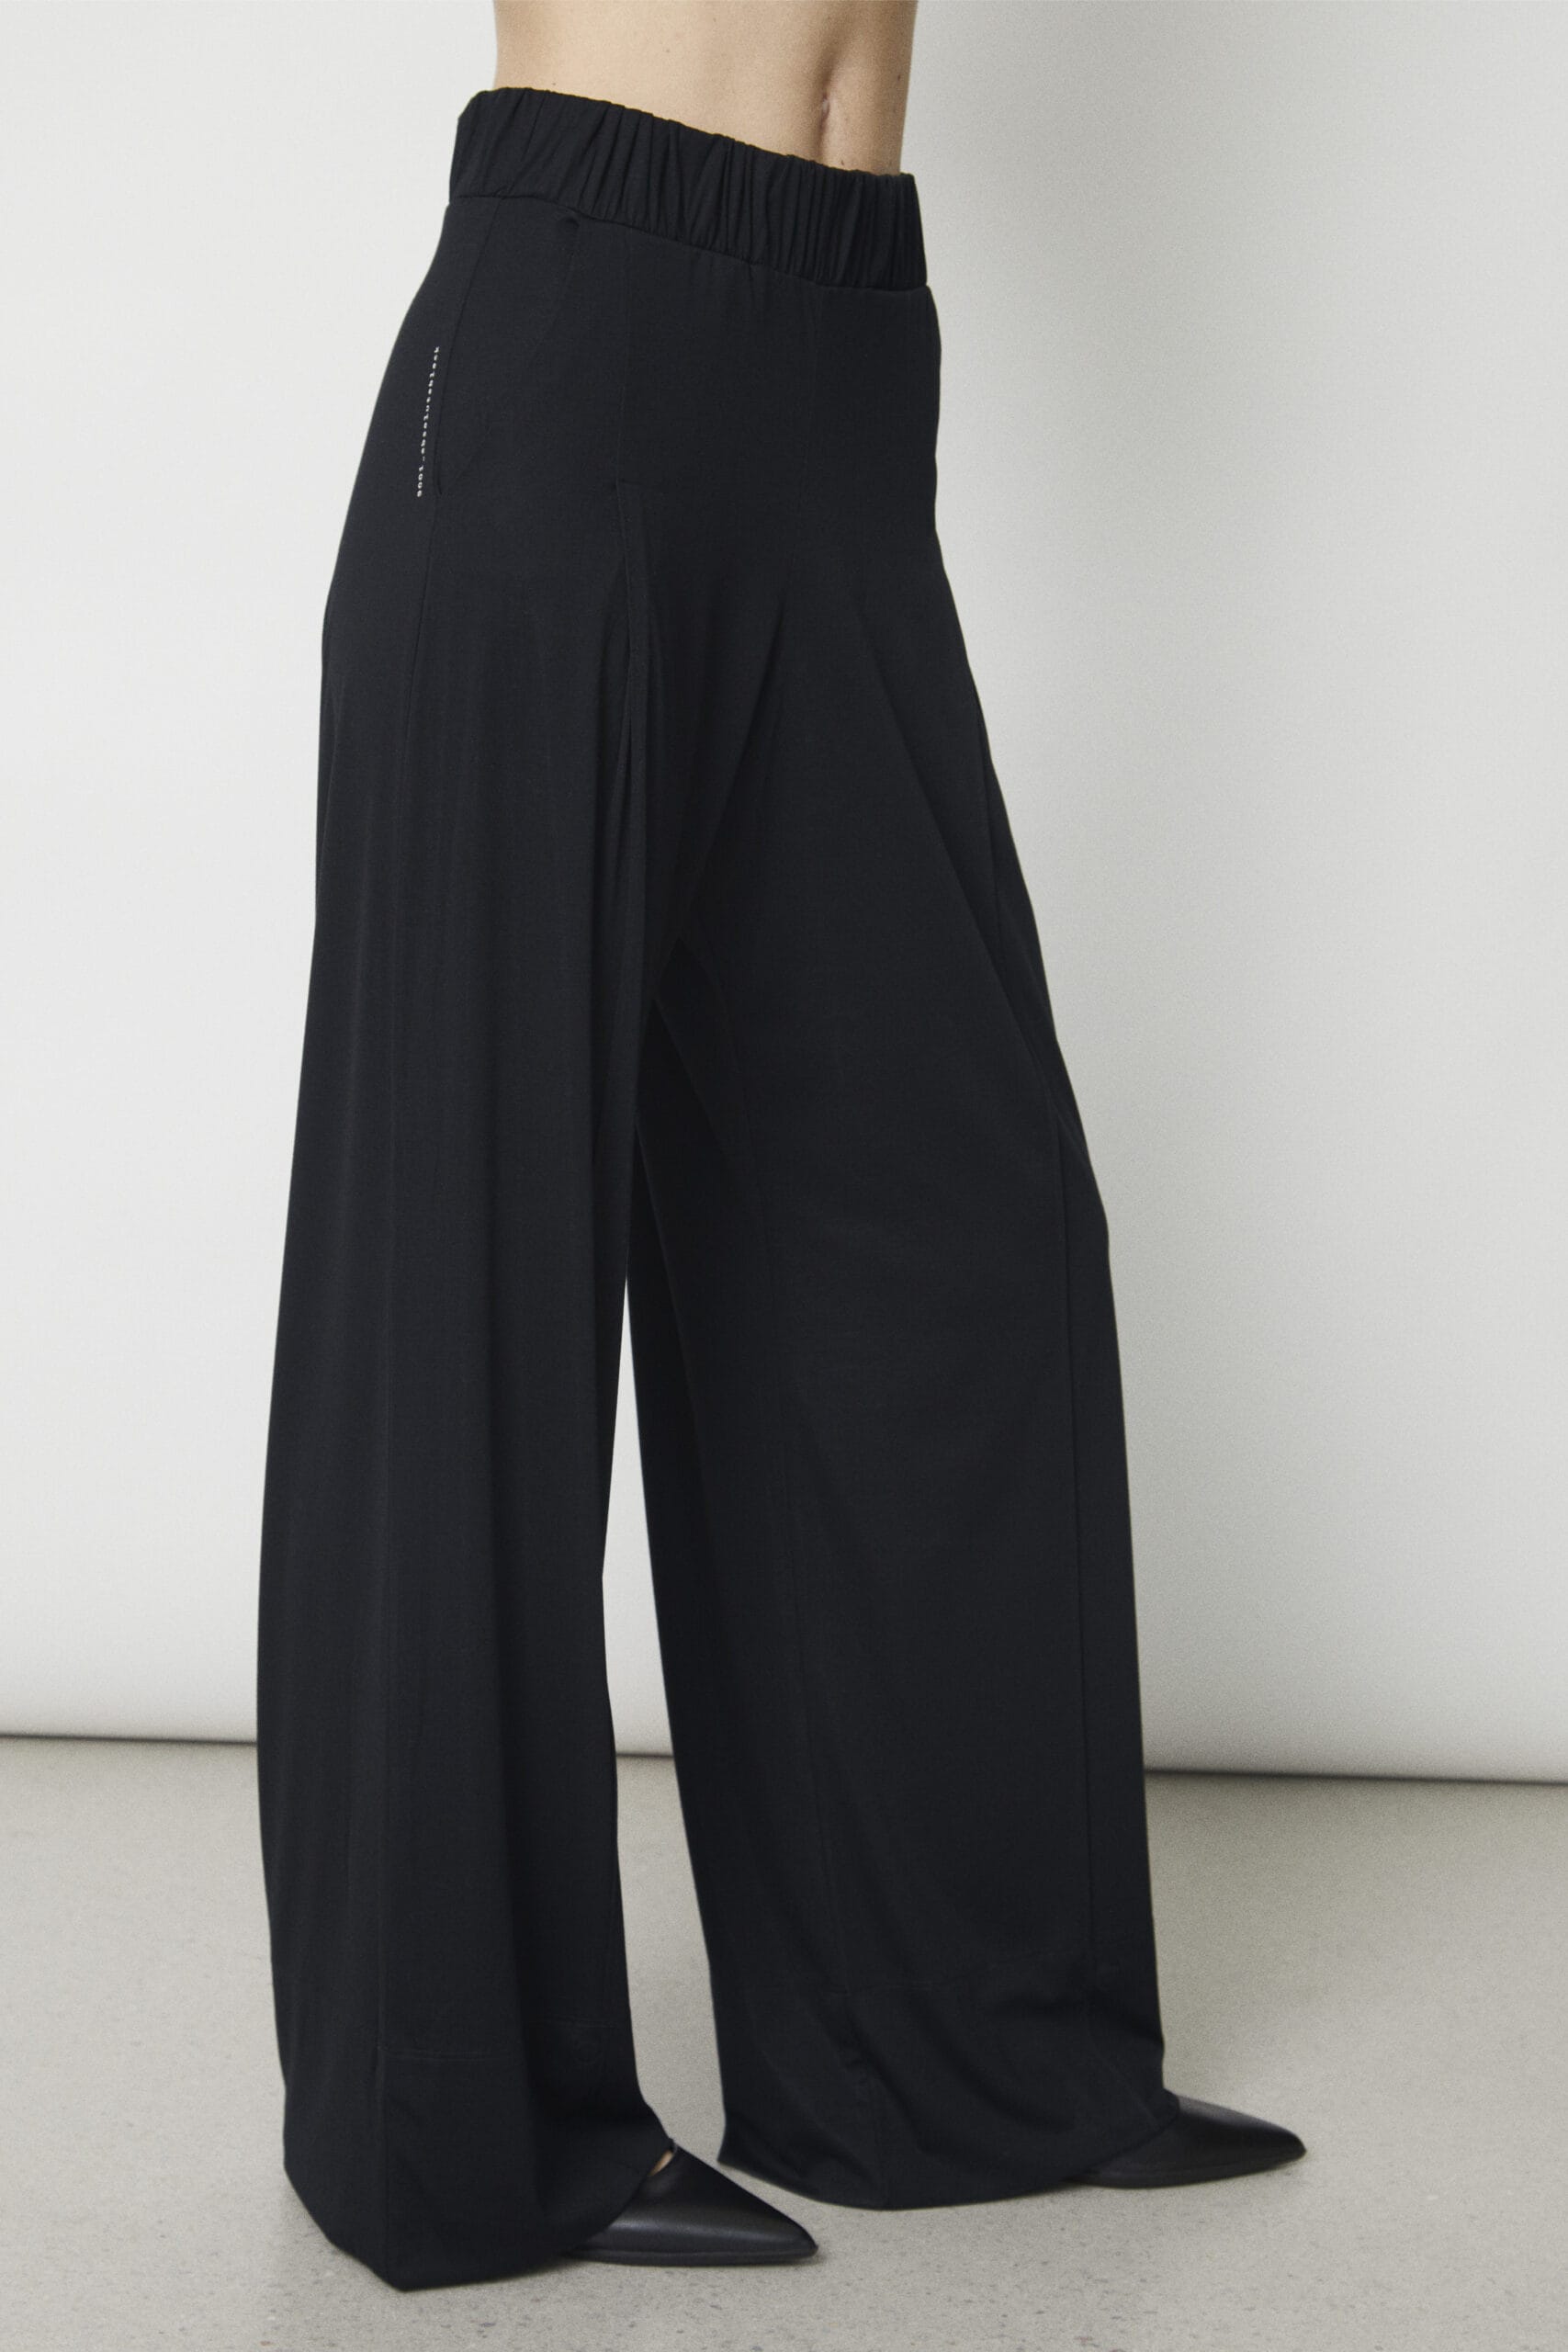 Deep White Black Modell ZOE weite Damen Hose schwarz mit Bügelfalte, Damen Stoffhose Schwarz aus Viscose mit elastischem Bund, versteckter Magnetknopf geöffnet, Ansicht von vorne rechts